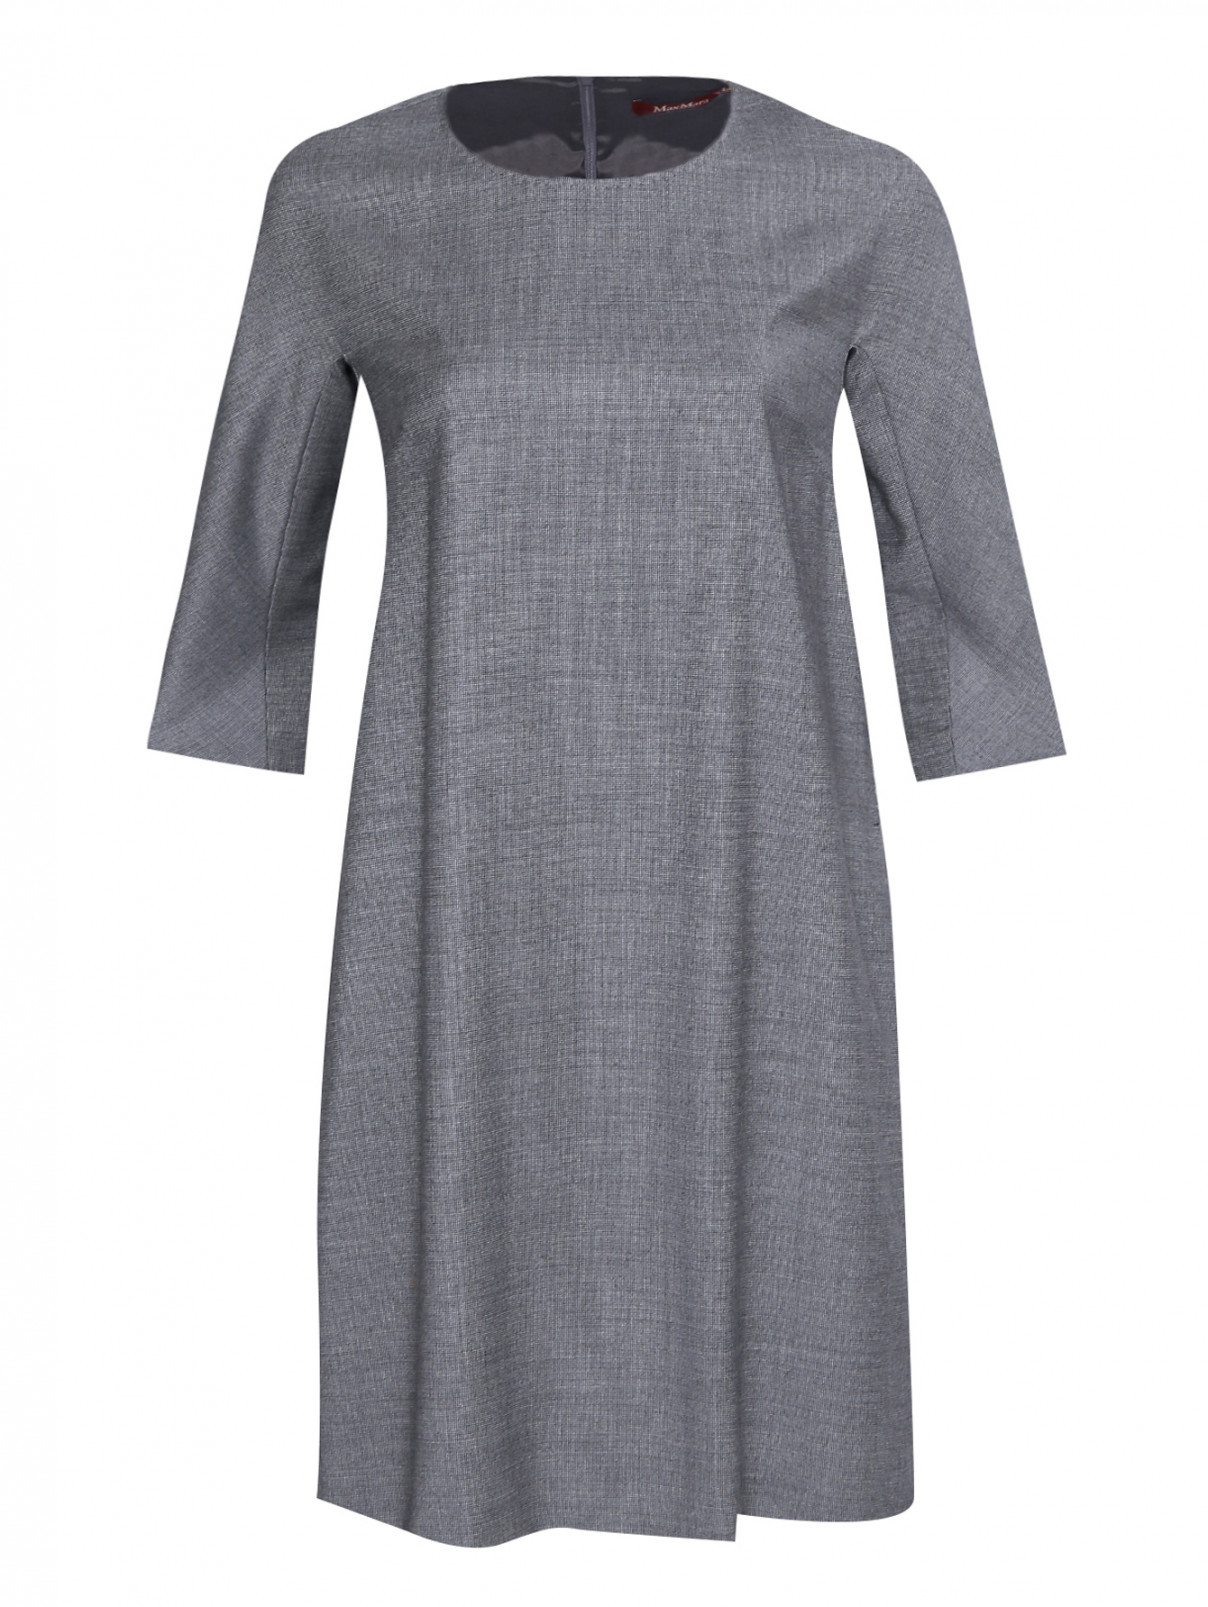 Платье из шерсти с рукавами 3/4 Max Mara  –  Общий вид  – Цвет:  Серый